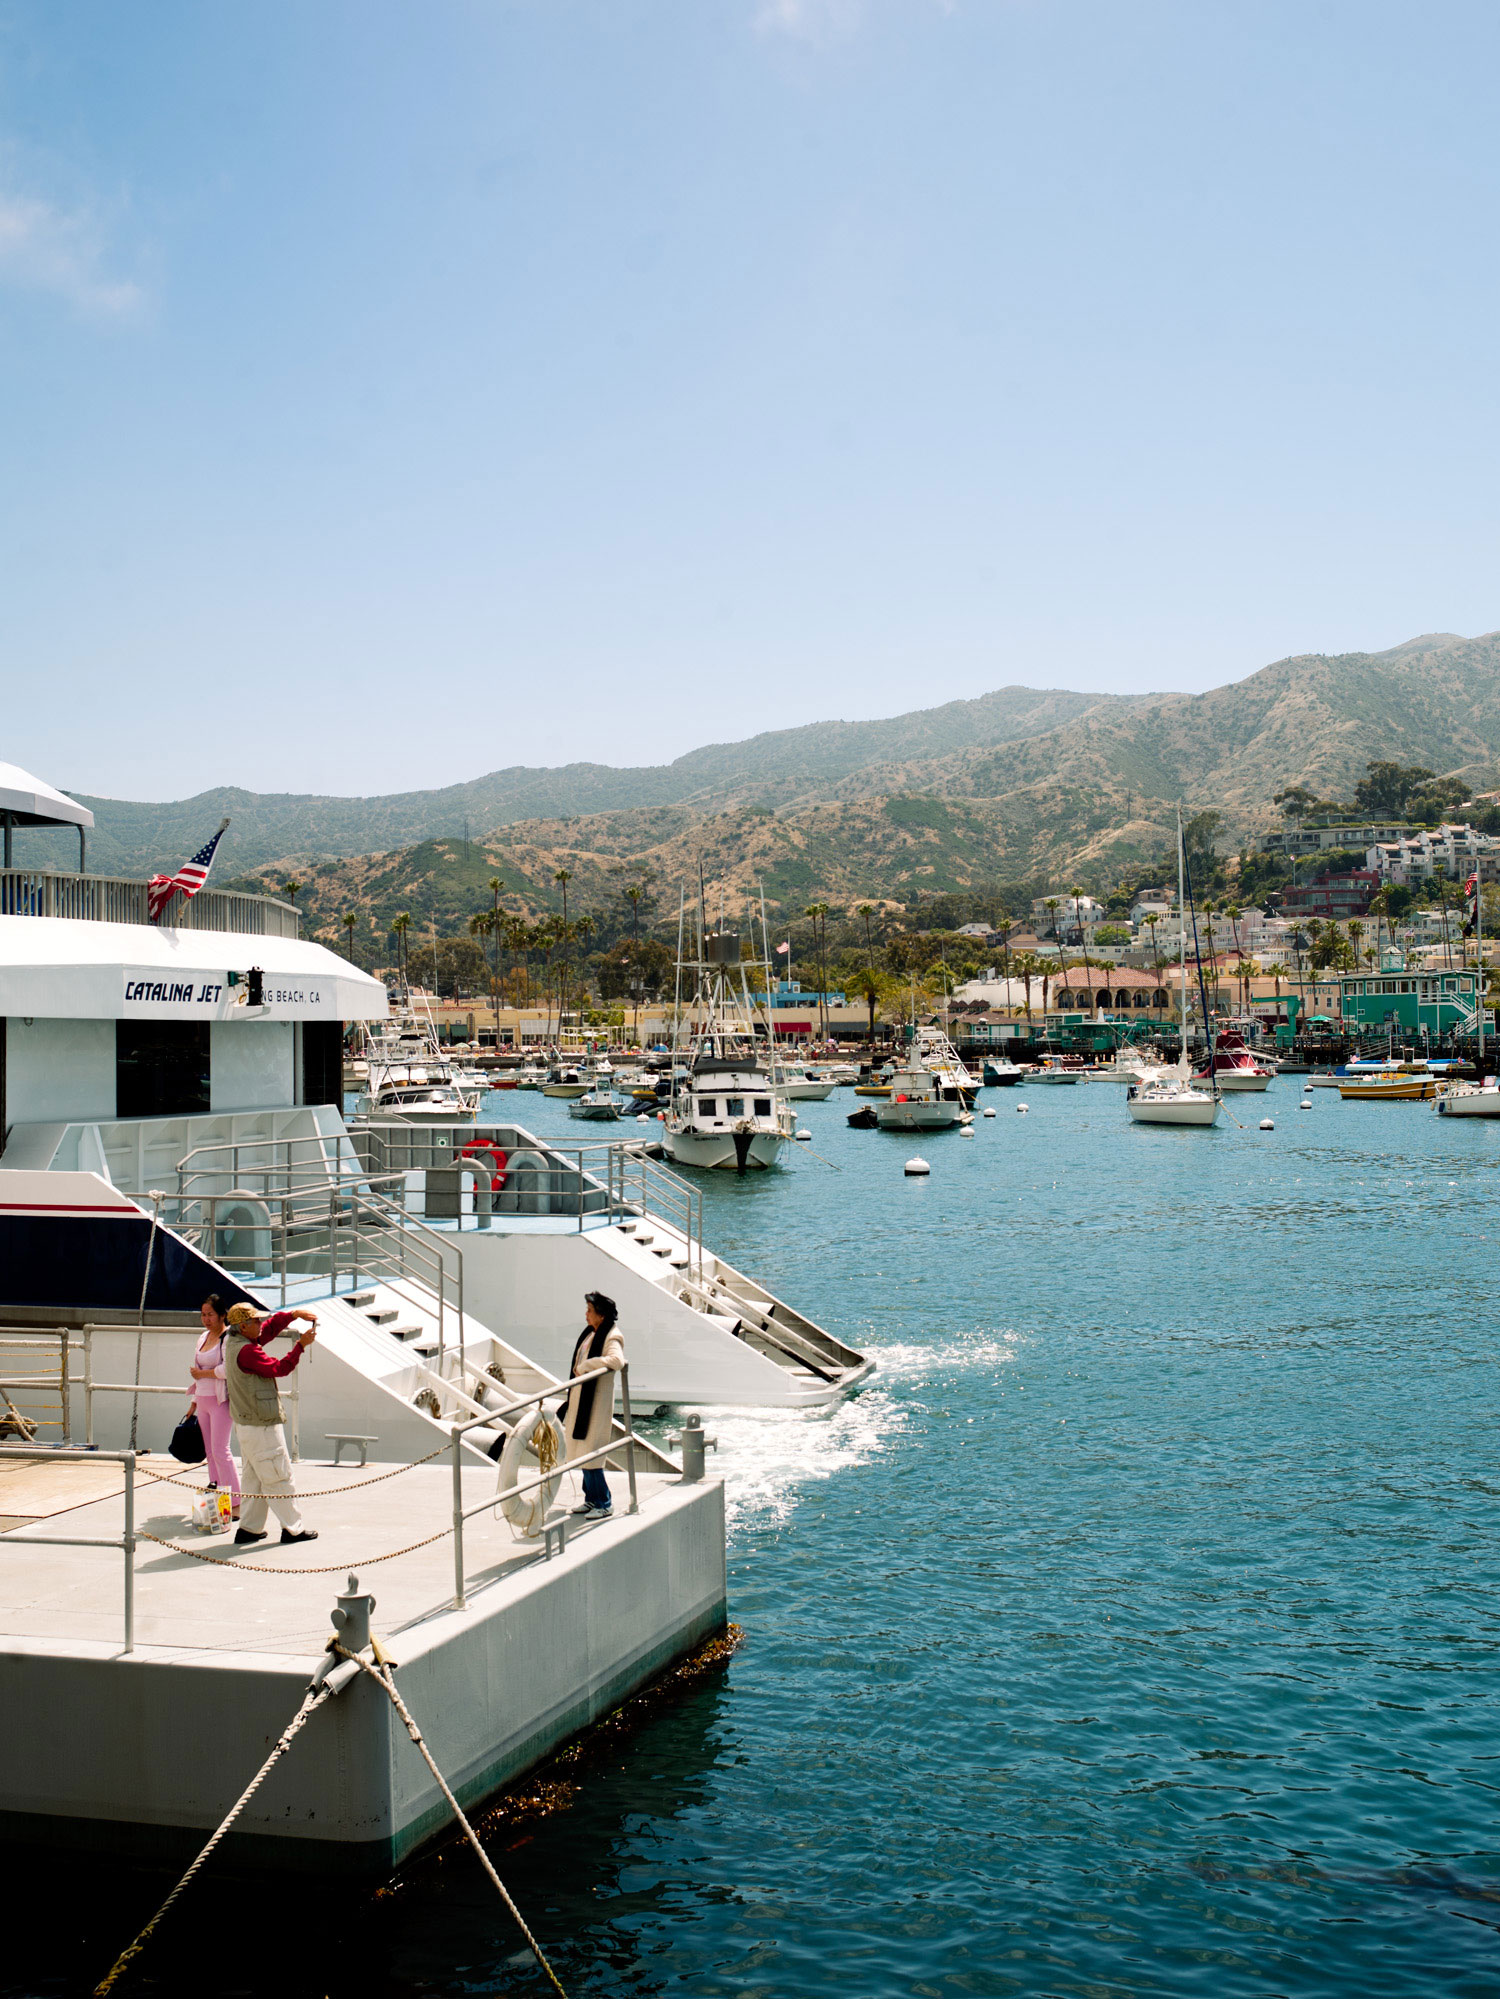 8 Reasons to Visit Catalina Island